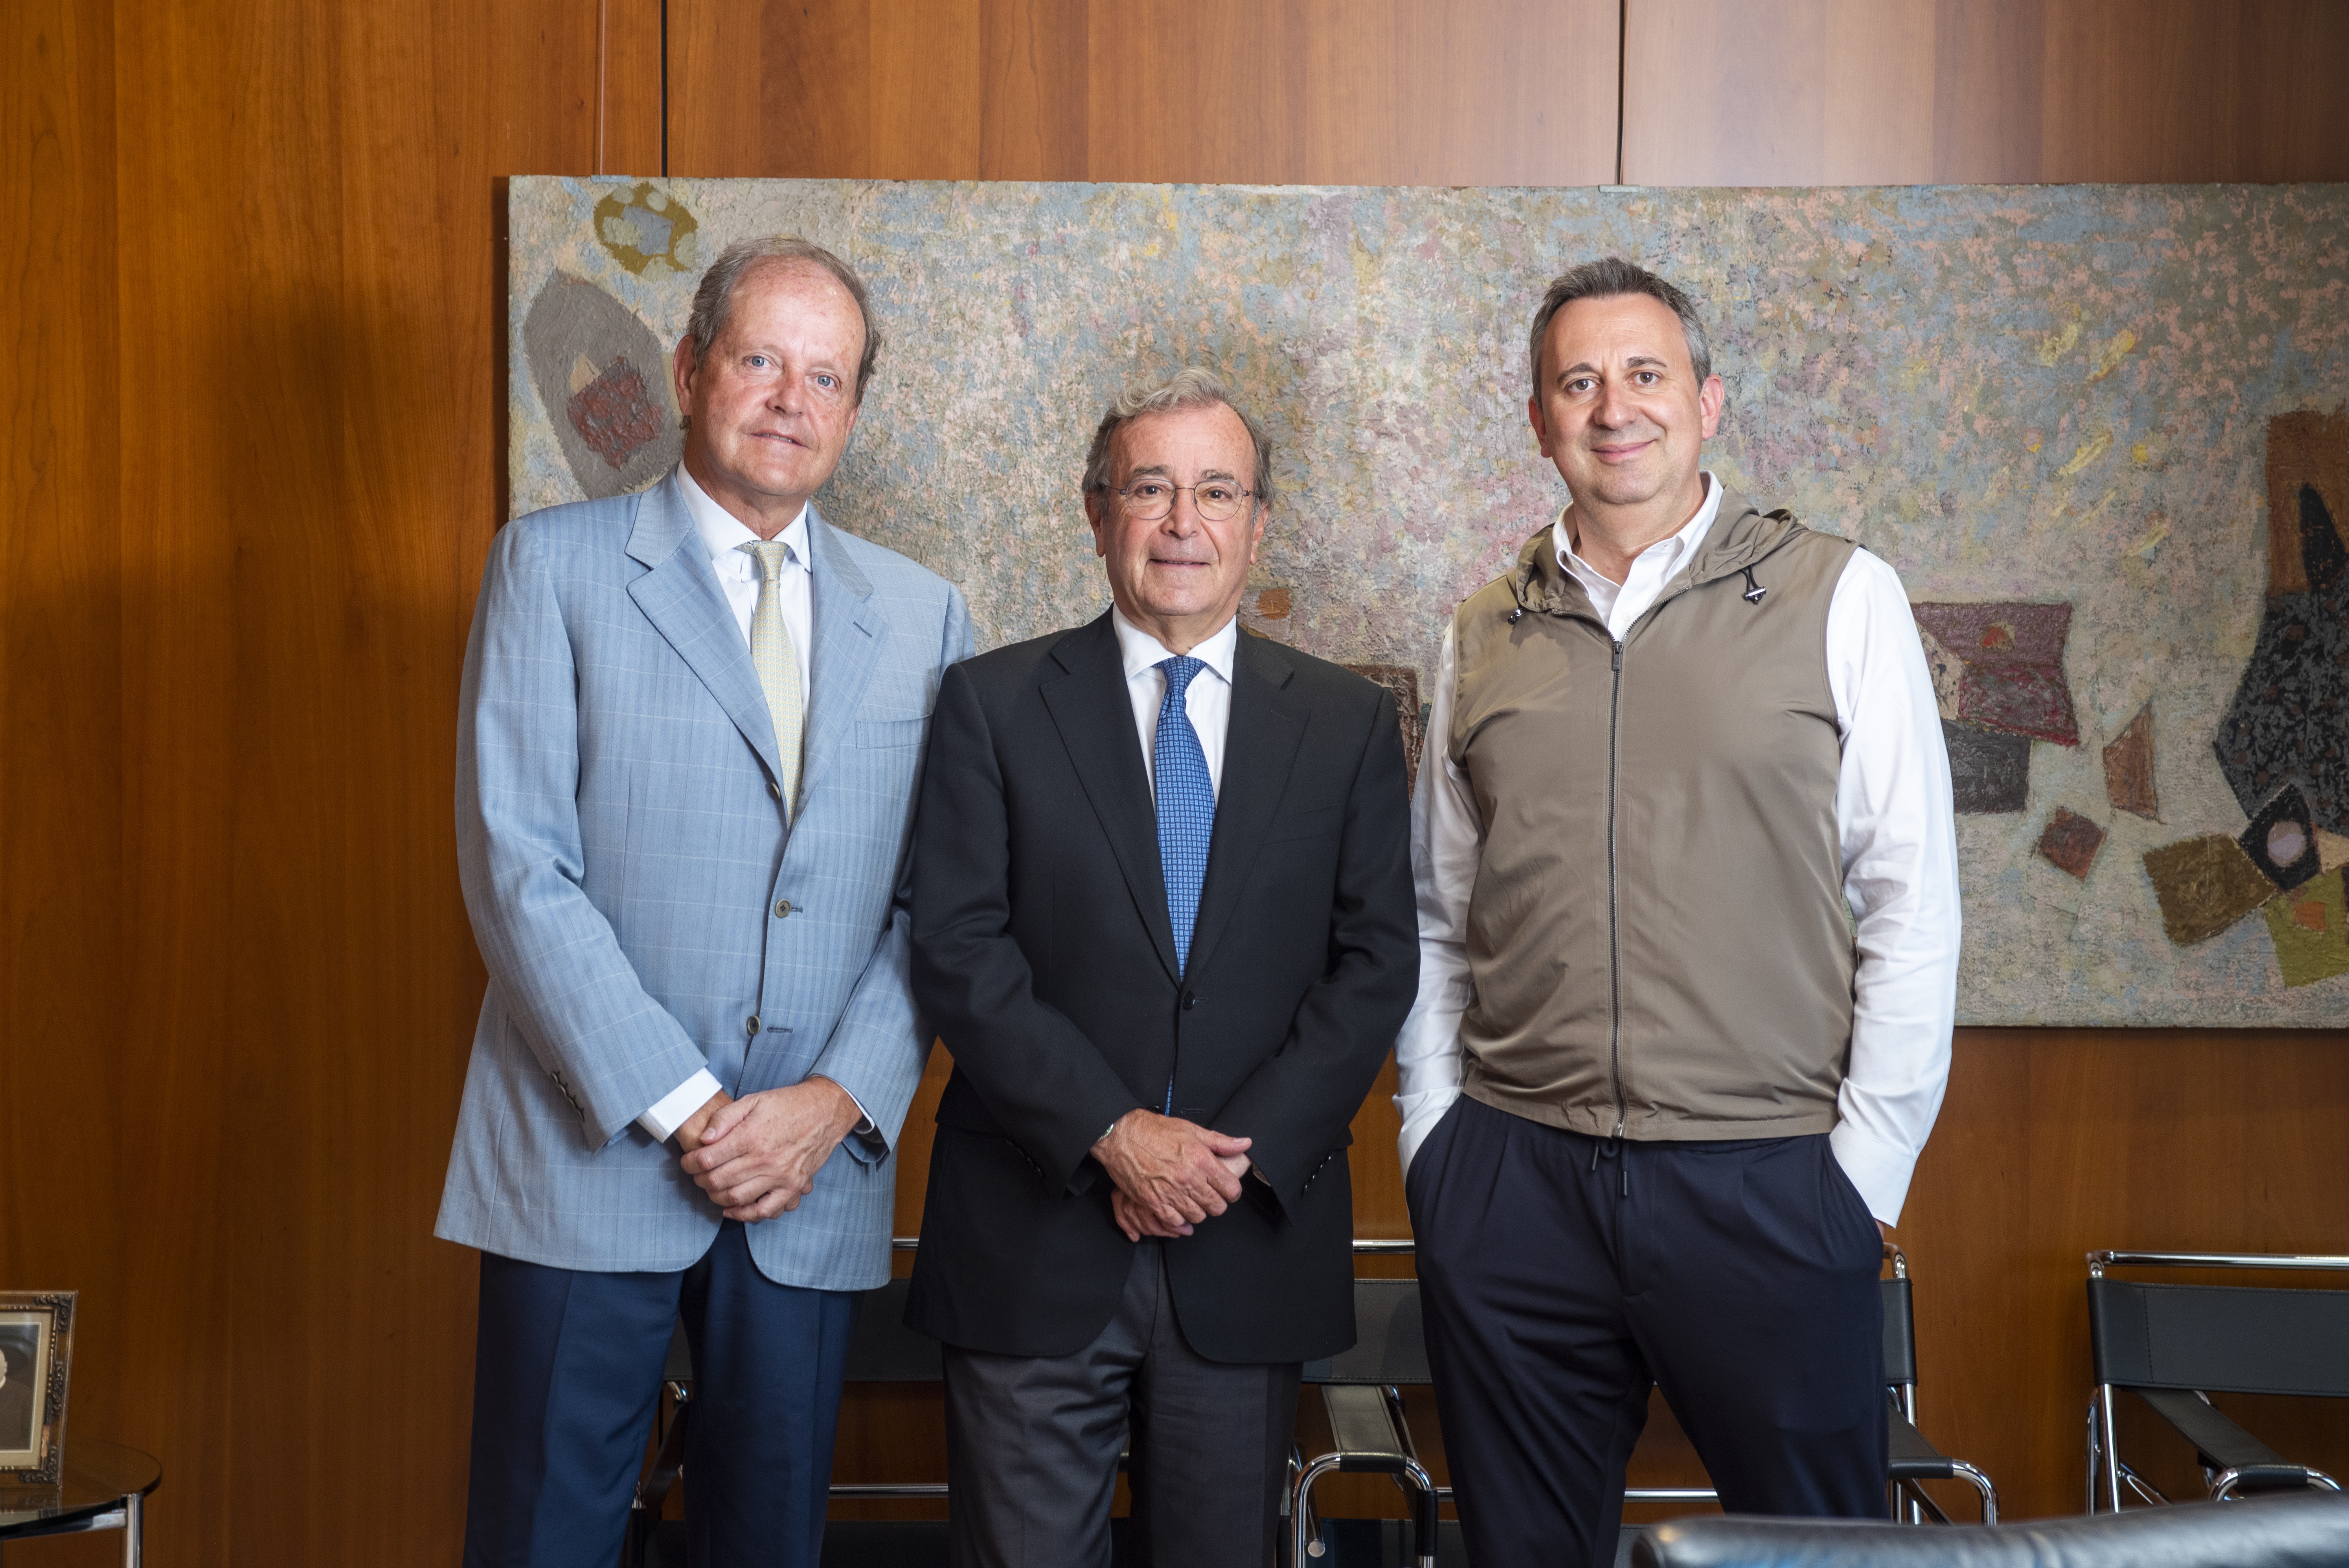 Uriach portavoces Enrique Uriach, Luis Cantarell y Oriol Segarra